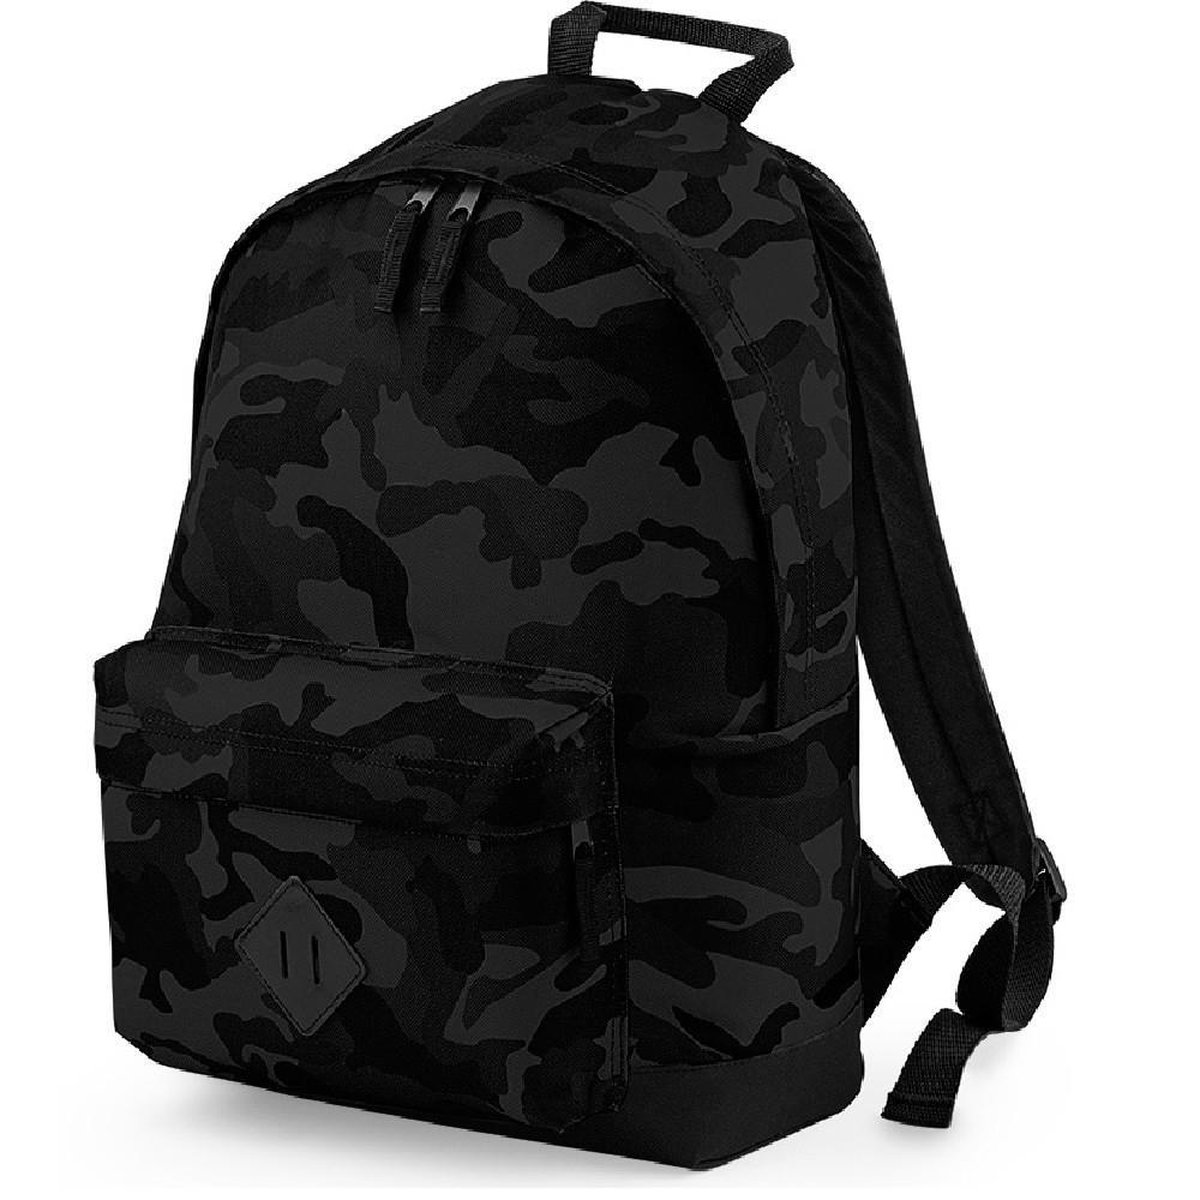 Senvi Stoere Rugzak/Backpack - Kleur Donker Camouflage/Zwart - 18 Liter